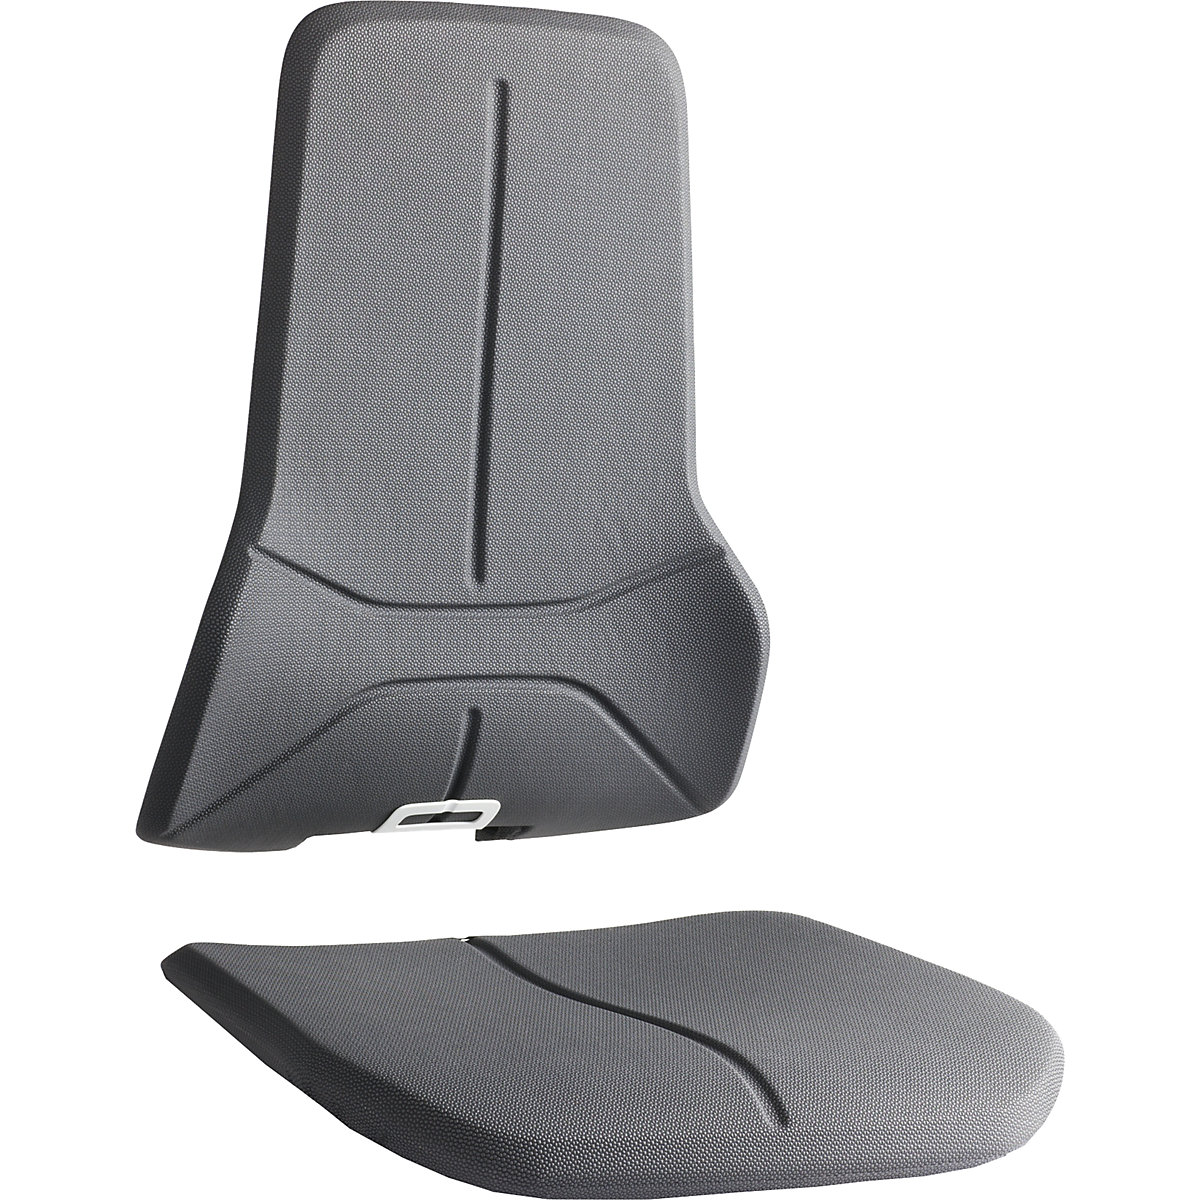 Súprava čalúnení pre pracovné otočné stoličky NEON – bimos, 1 sedadlový a 1 operadlový prvok, Supertec – extrémne odolný proti oderu, necitlivý, ľahko sa čistí-3